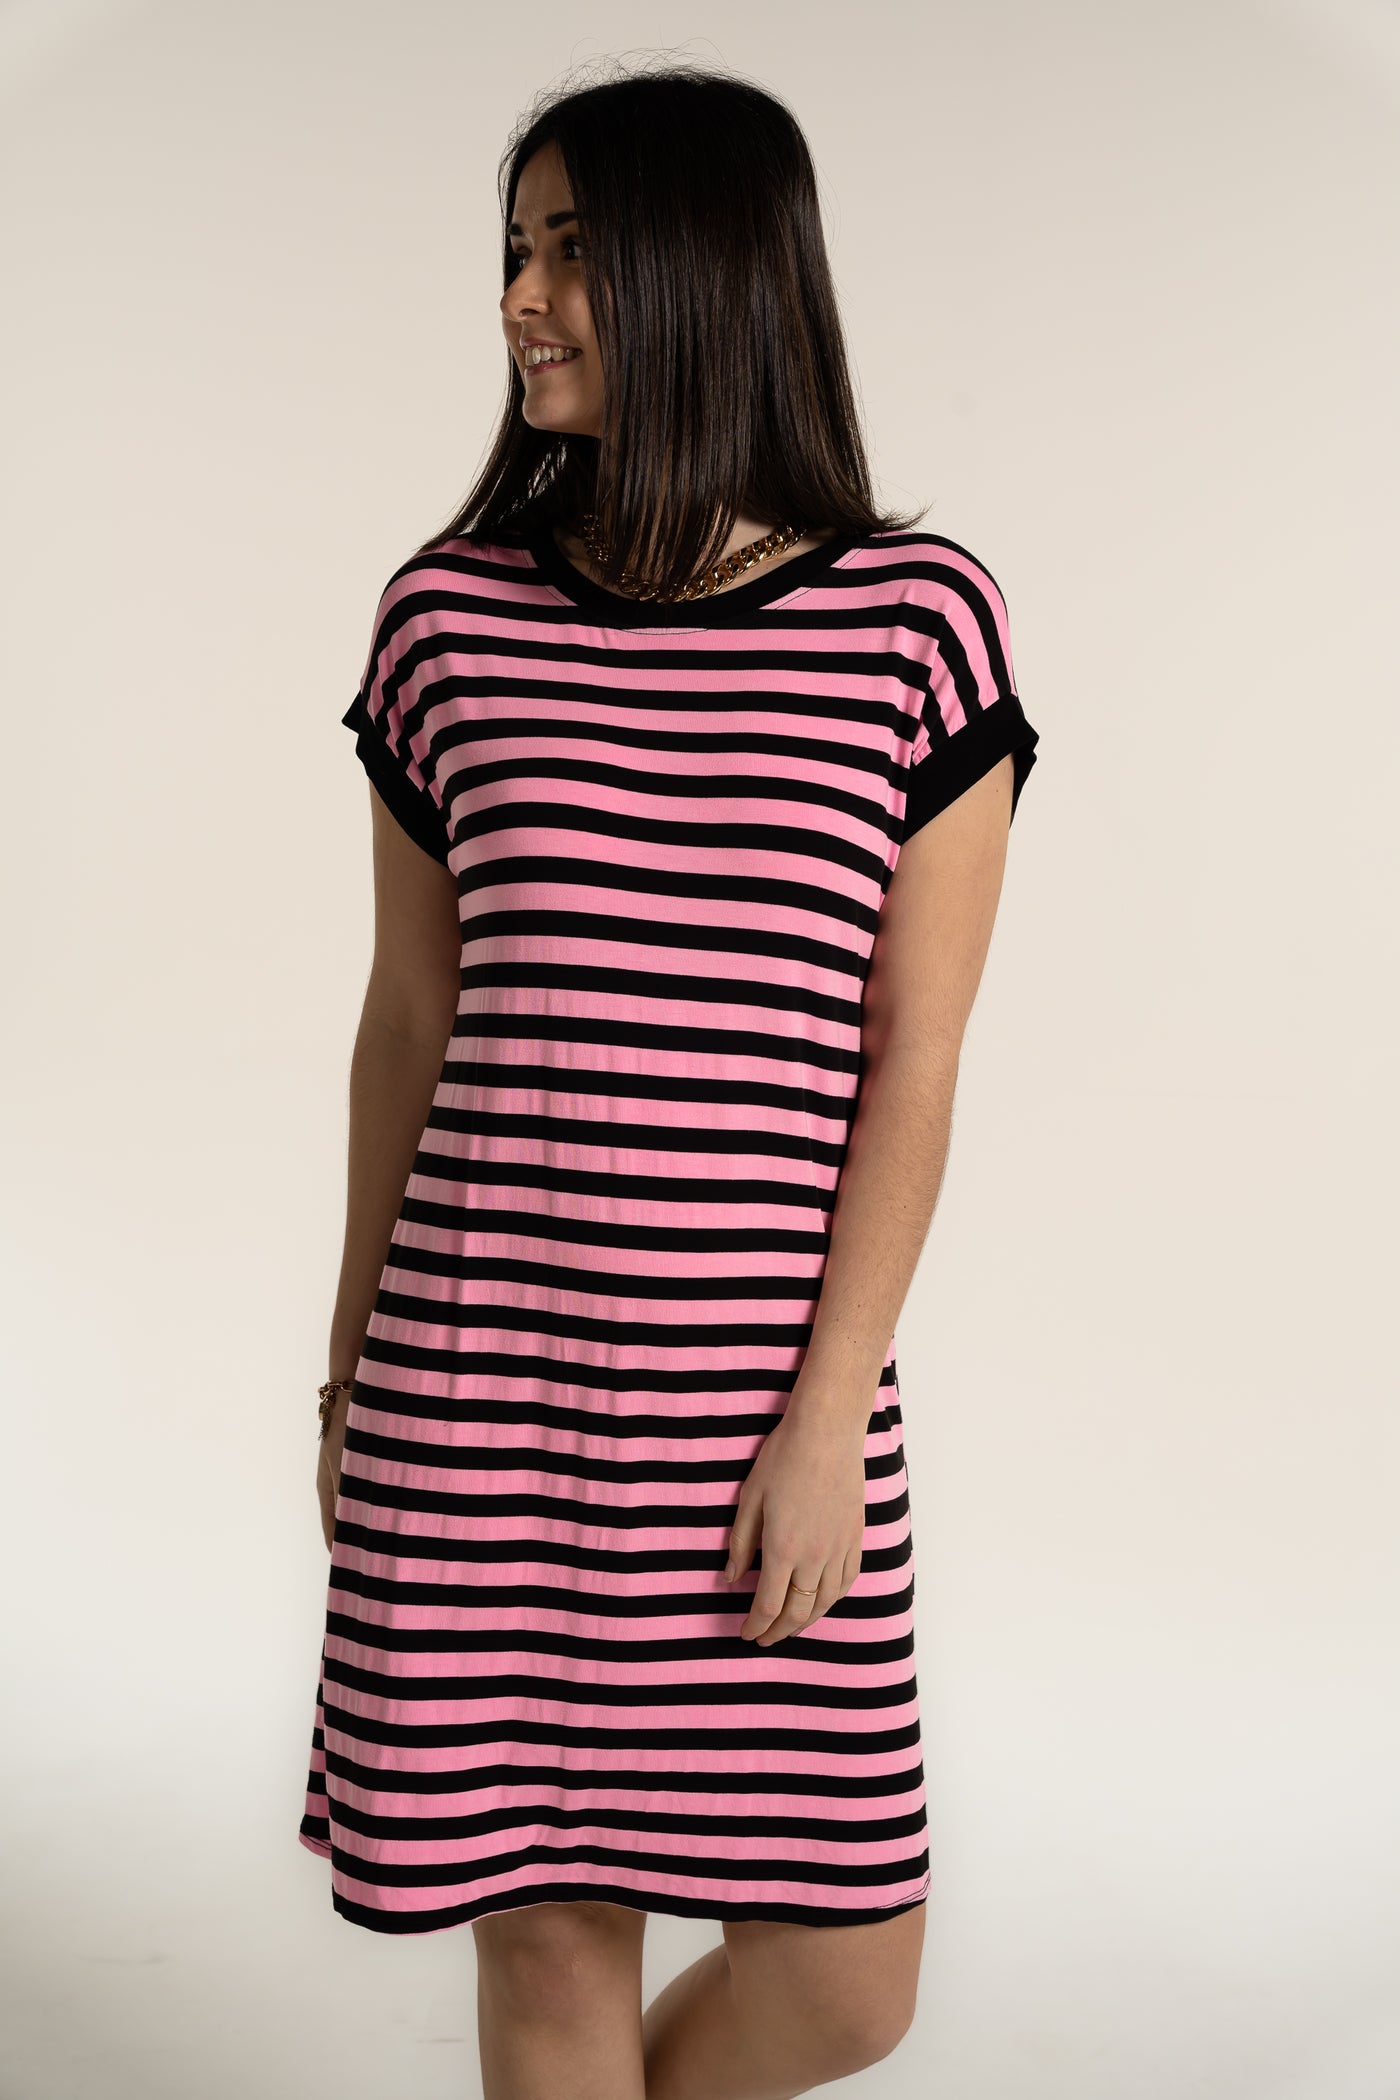 Stripe Tricia dress